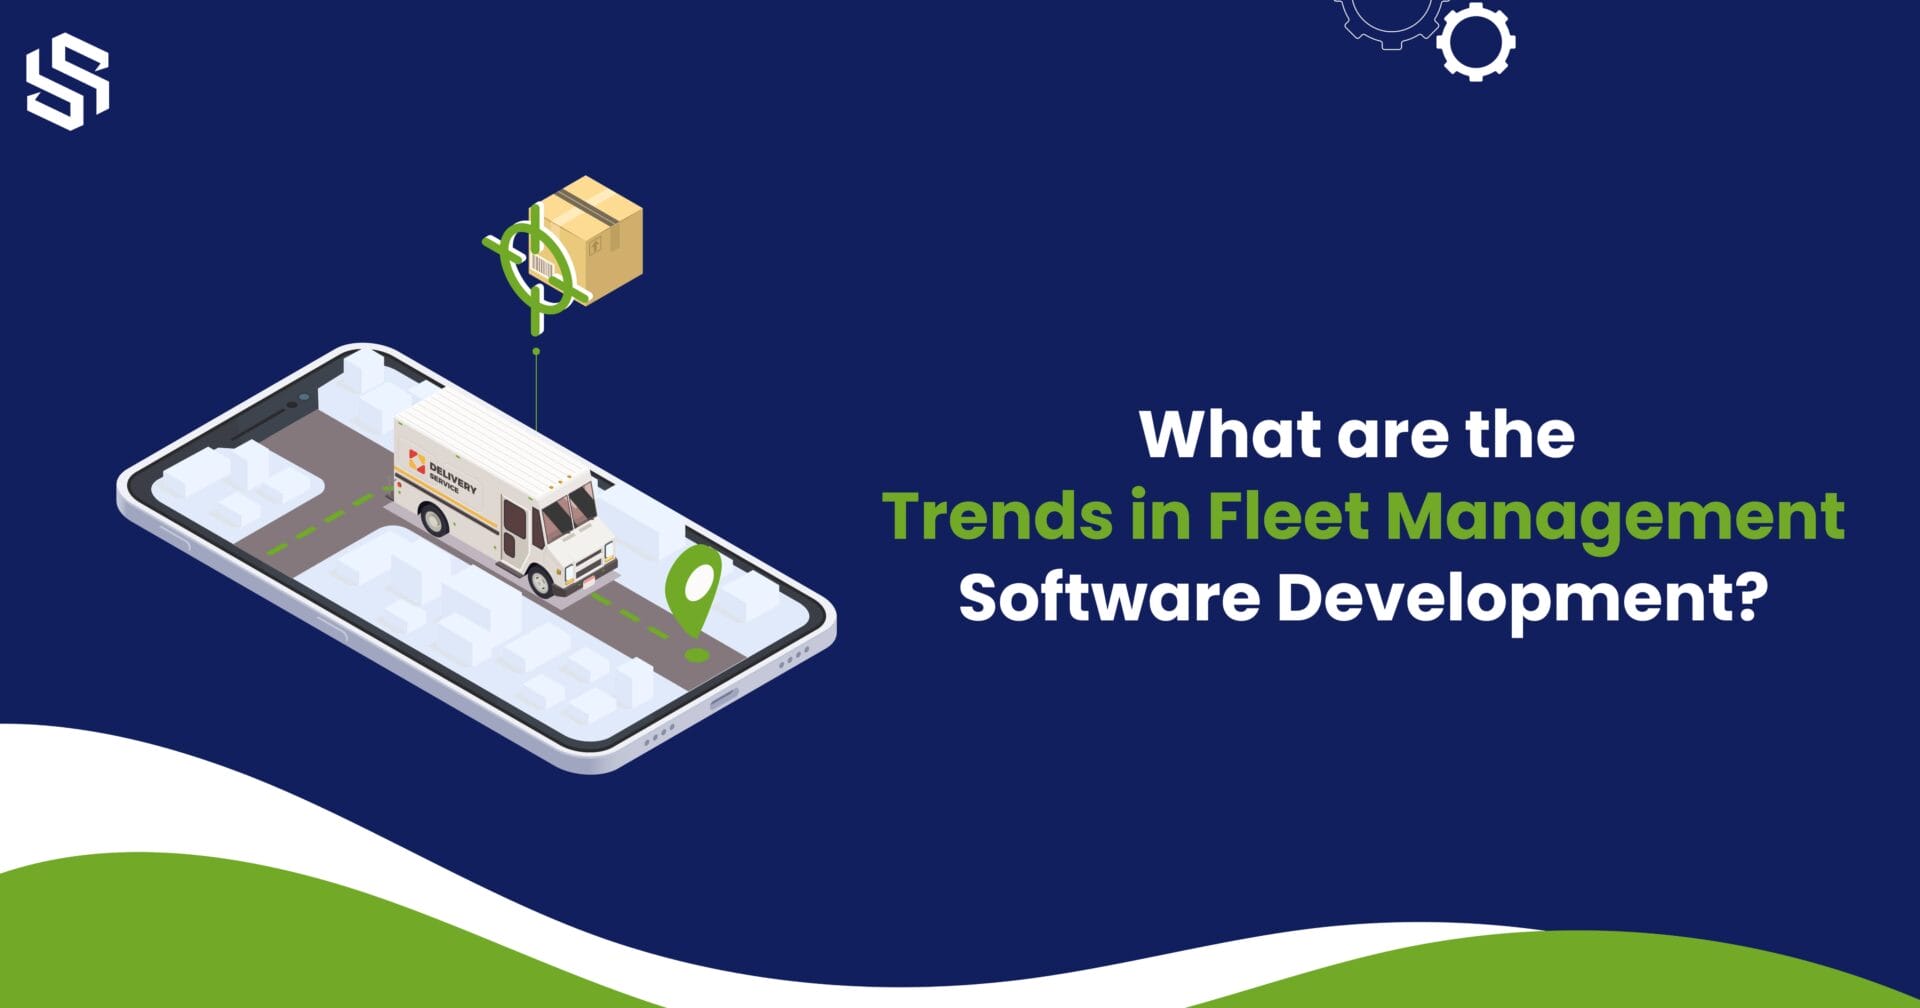 How Much Does Fleet Management Software Development Cost